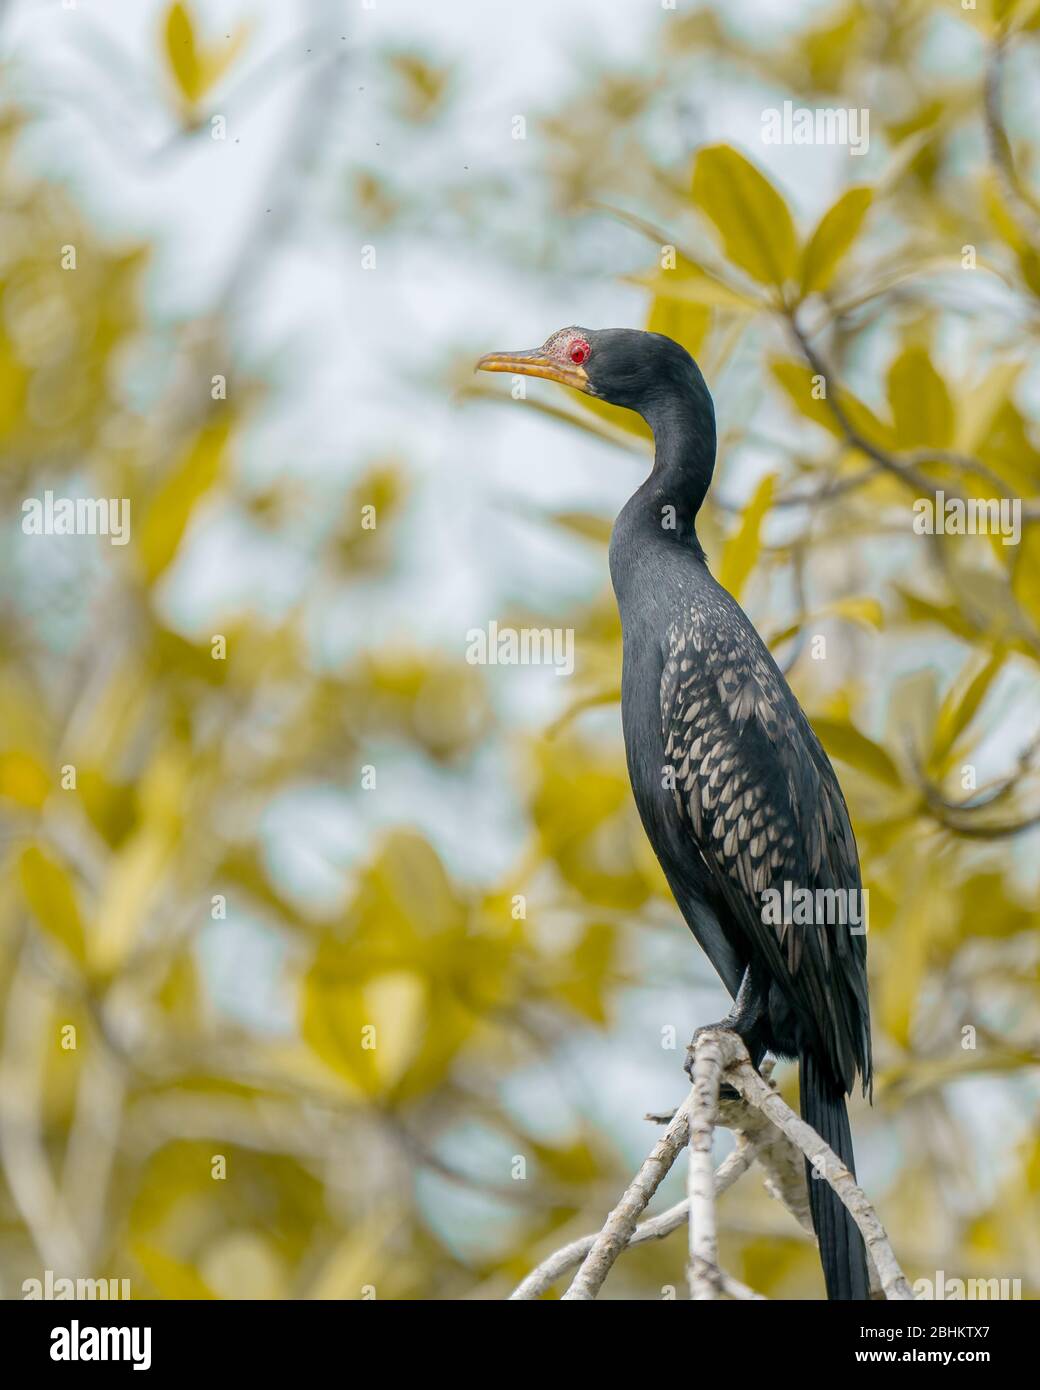 Die großen Schilfrohrvögel von Akwidaa, Westghanaische Region. Diese Vögel regieren die Flüsse des geschützten Wasser-Ökosystems der Gemeinde Ahanta. Stockfoto